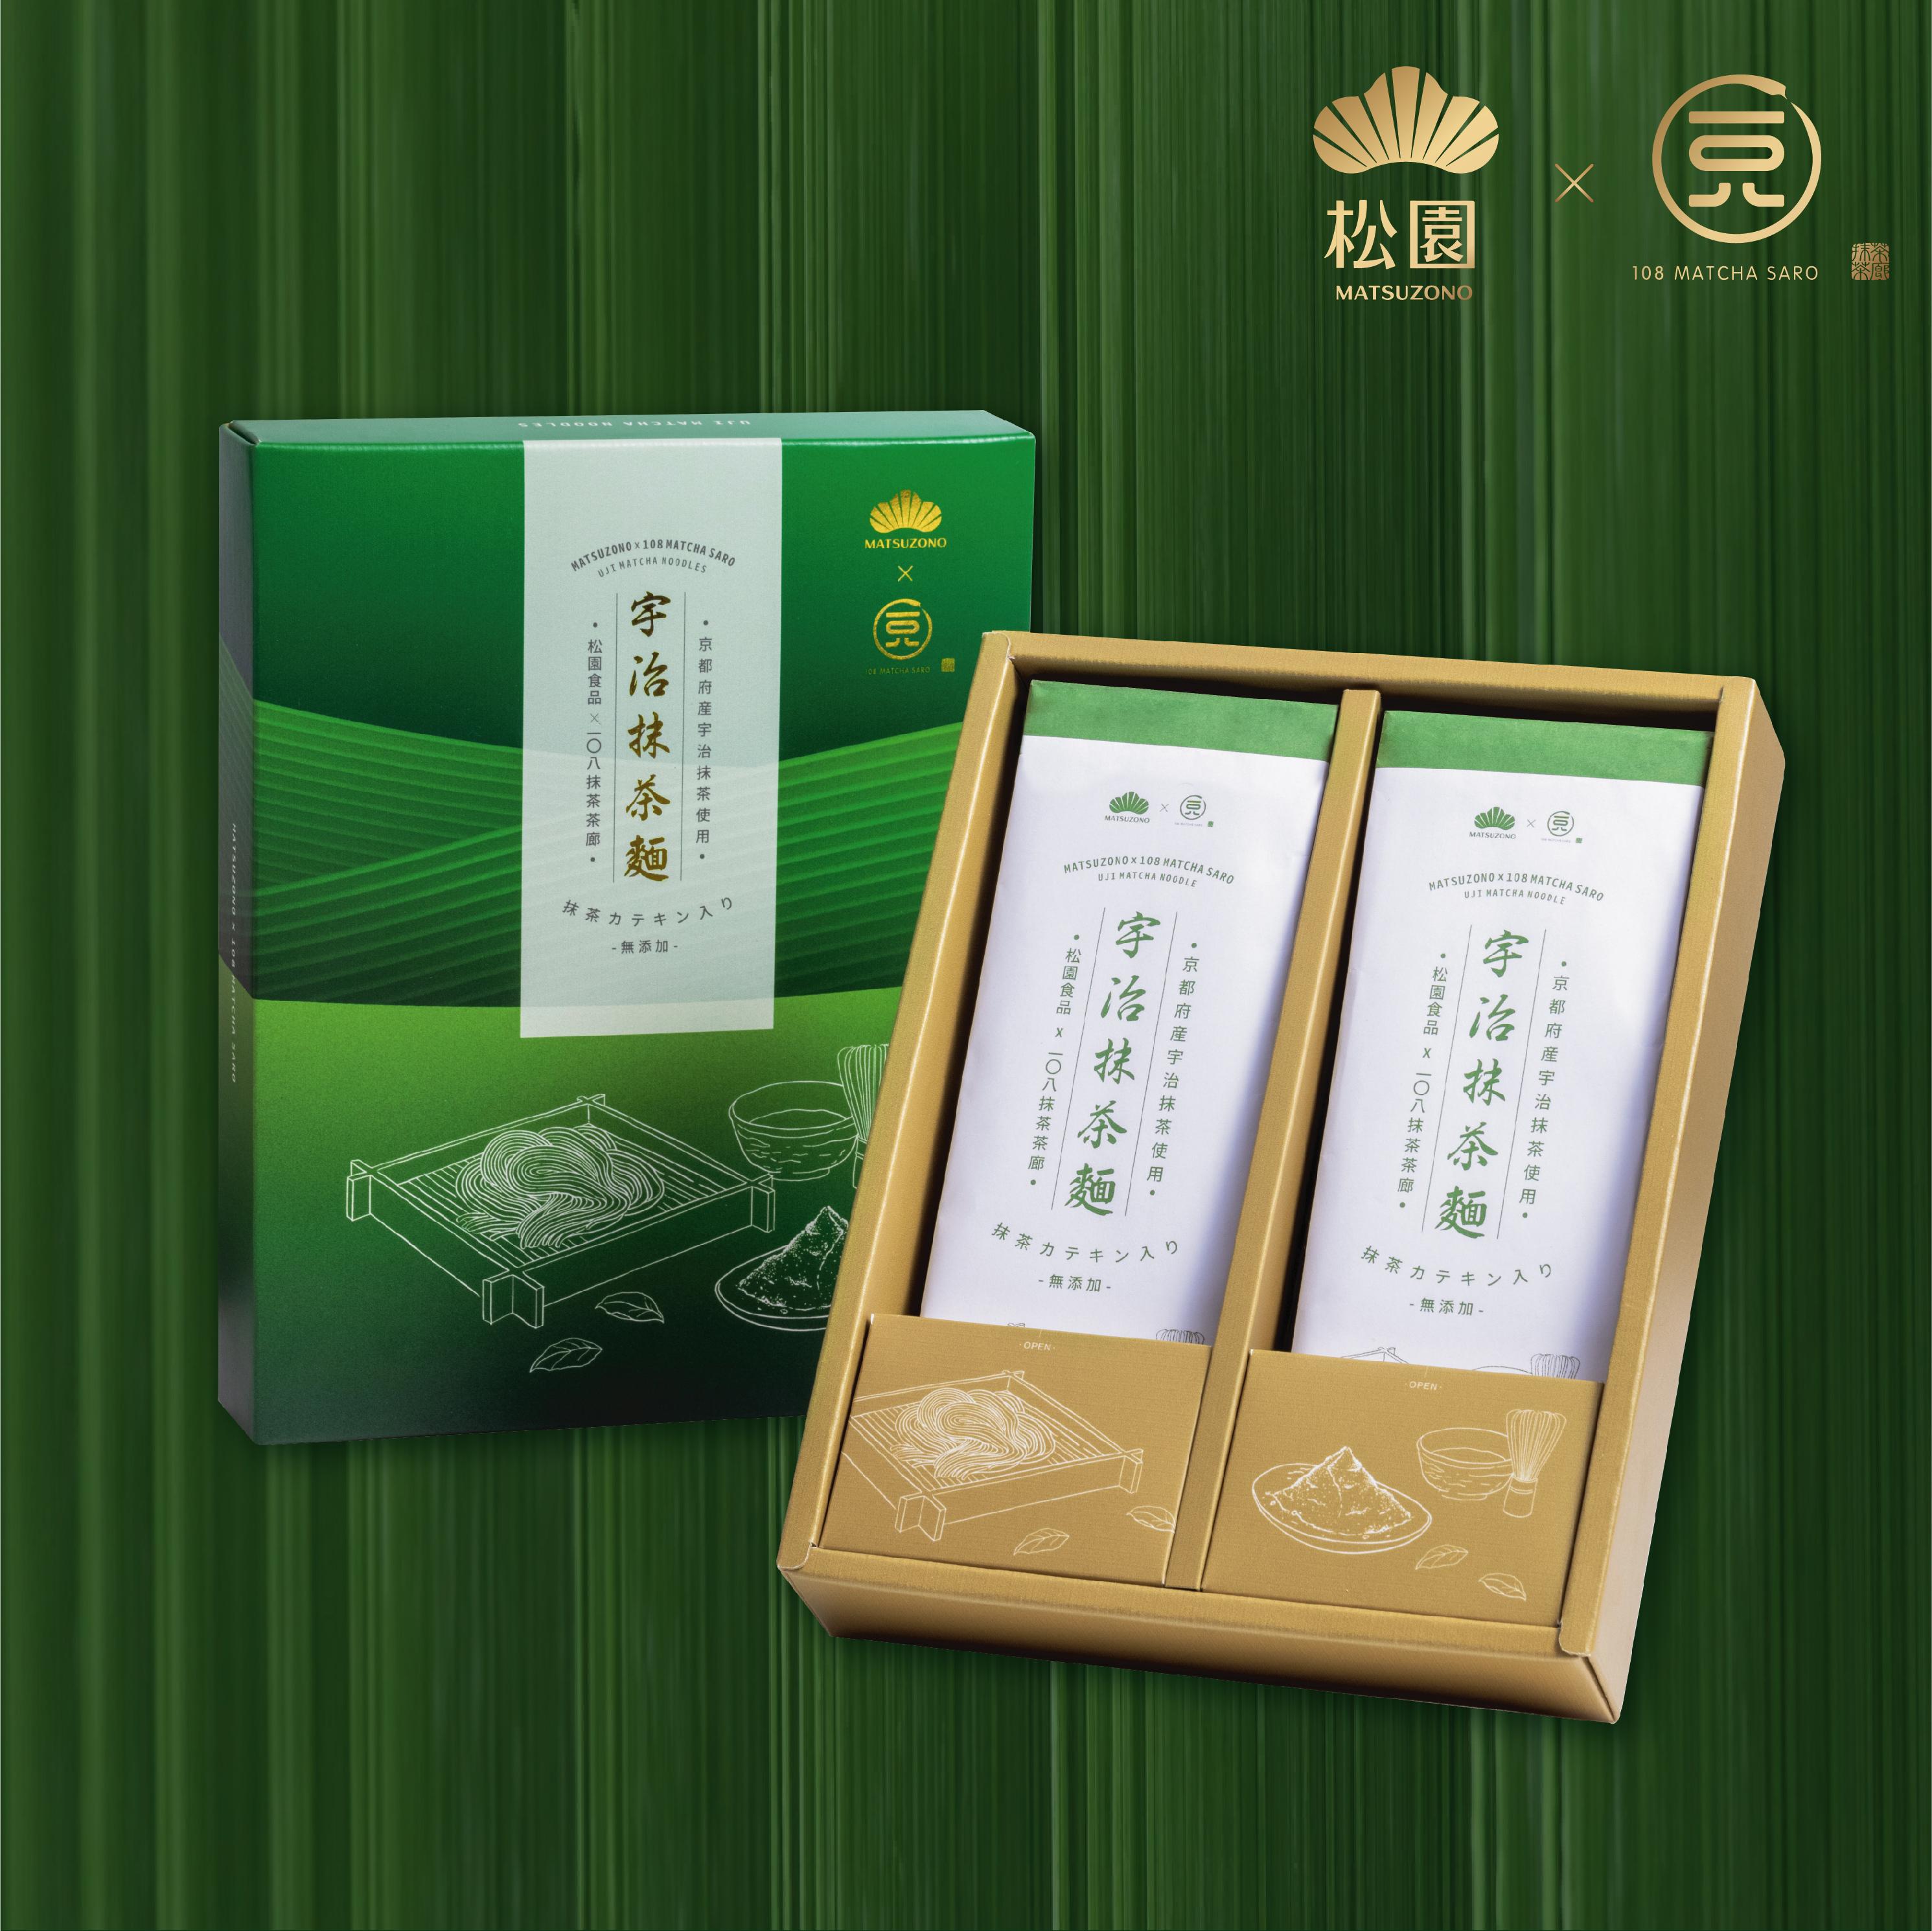 松園食品 x 一〇八抹茶茶廊-宇治抹茶麵禮盒